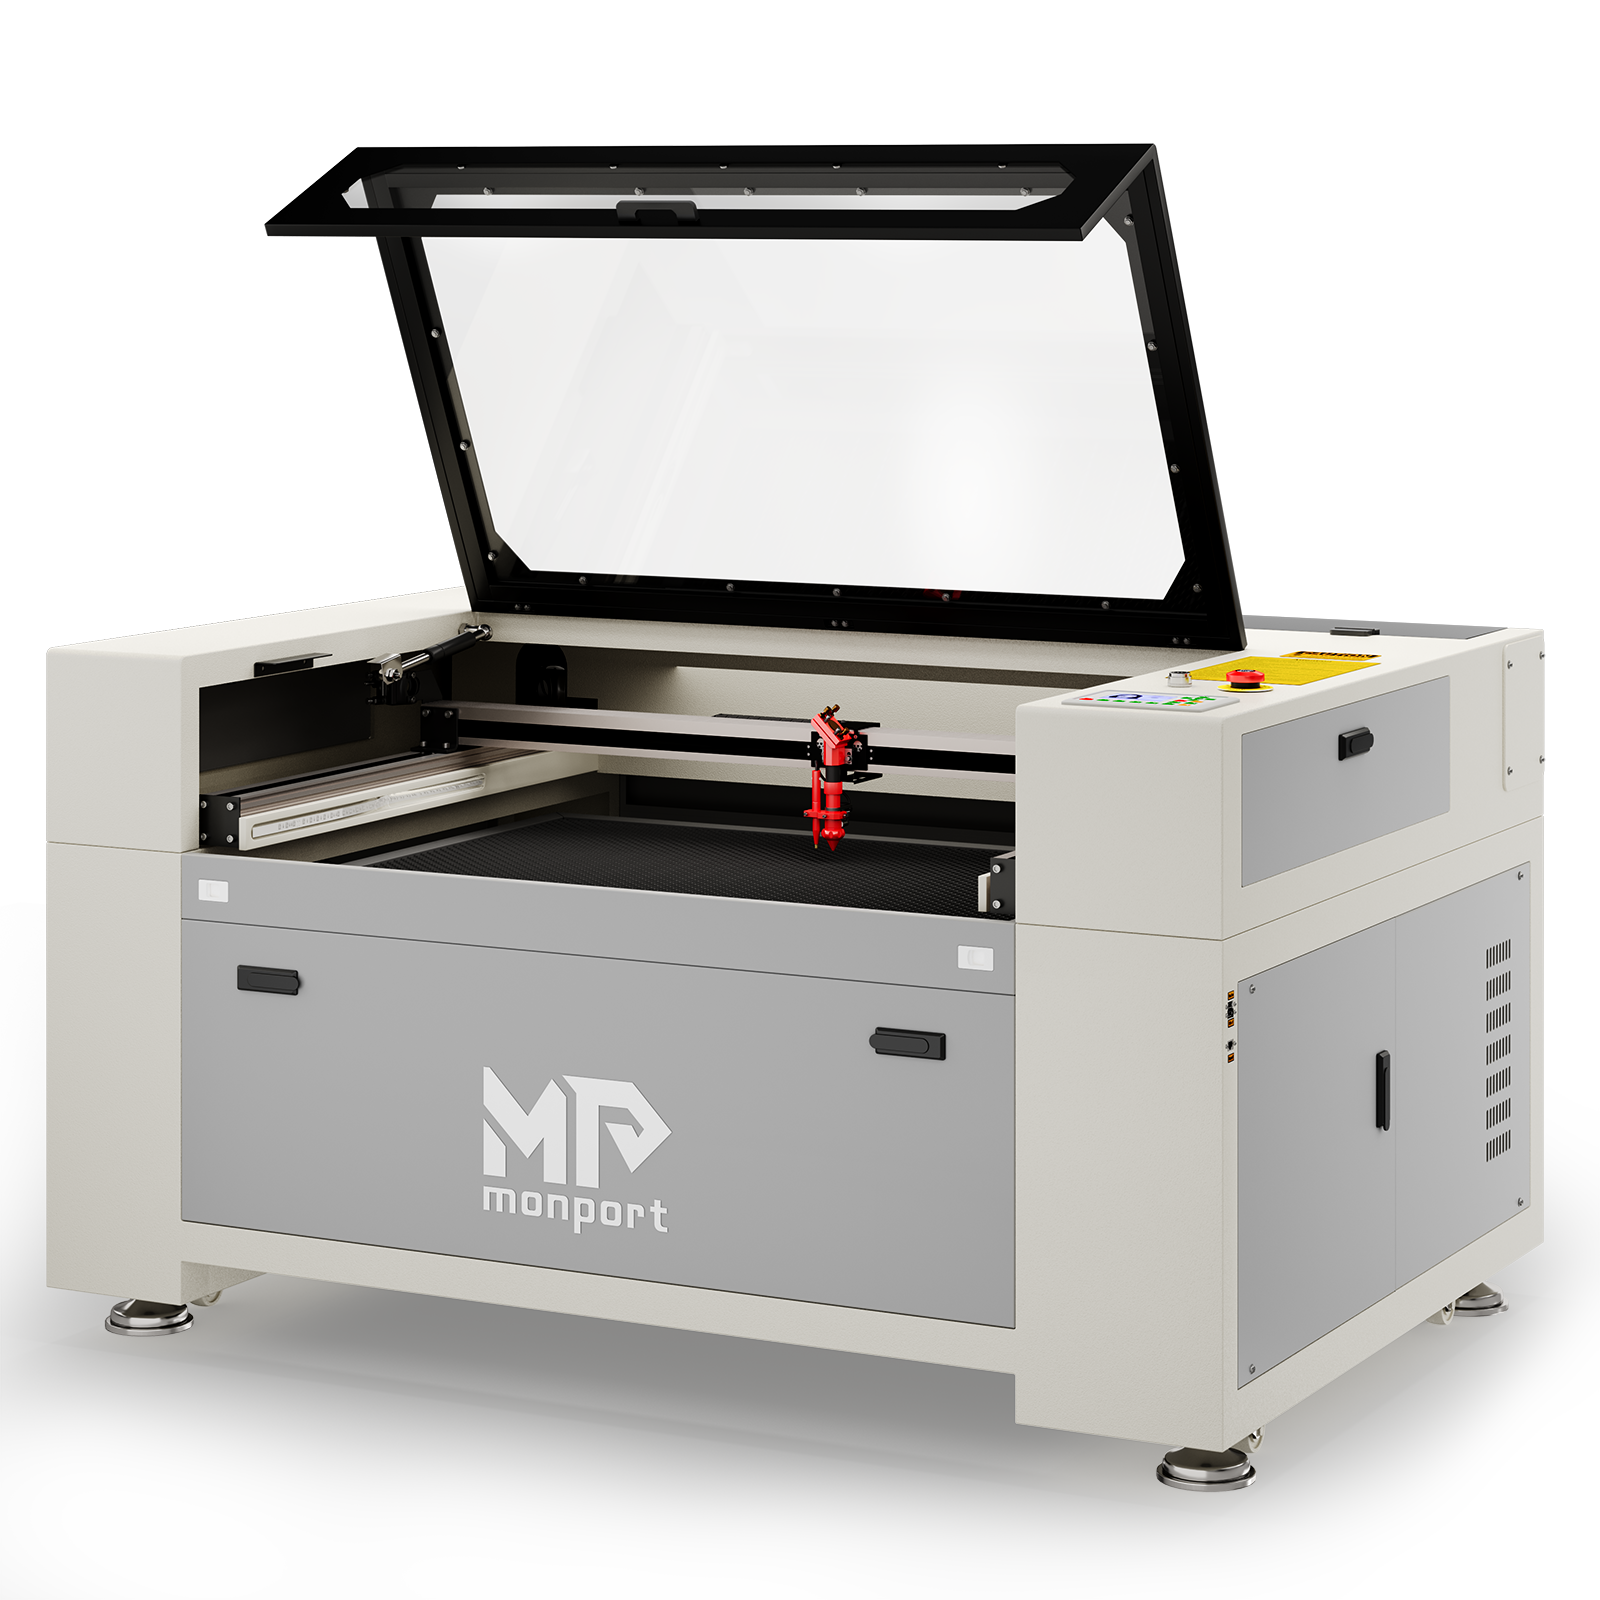 Monport 100W Built-in Chiller CO2 Laser Engraver & Cutter (40